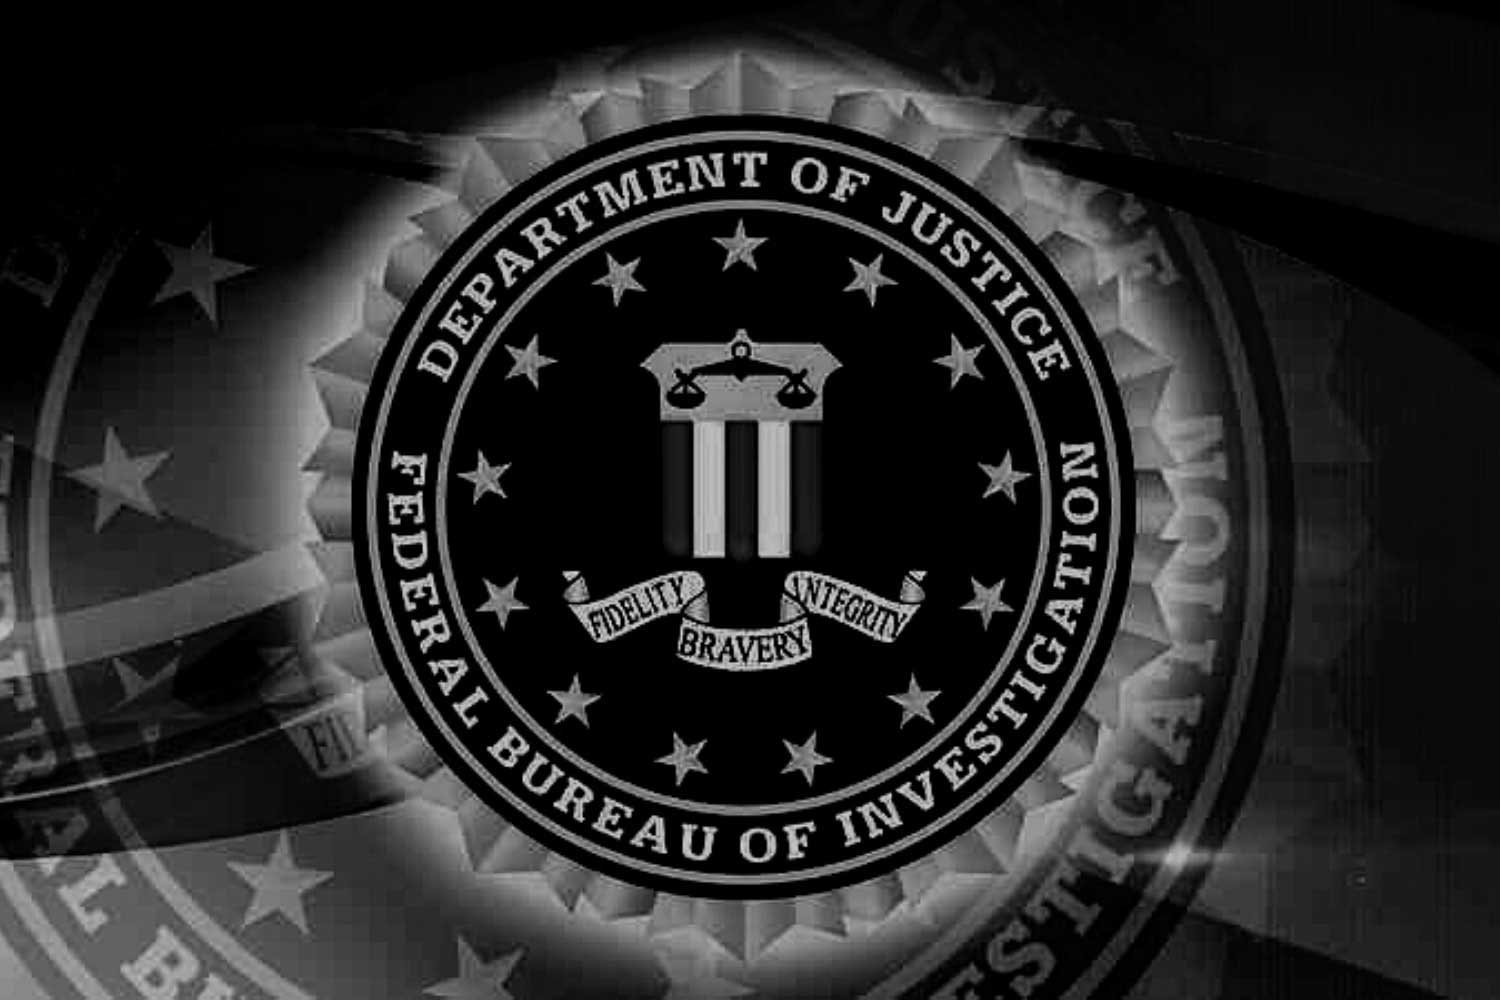 Fake Hacking Warnings Sent from Secure FBI Server